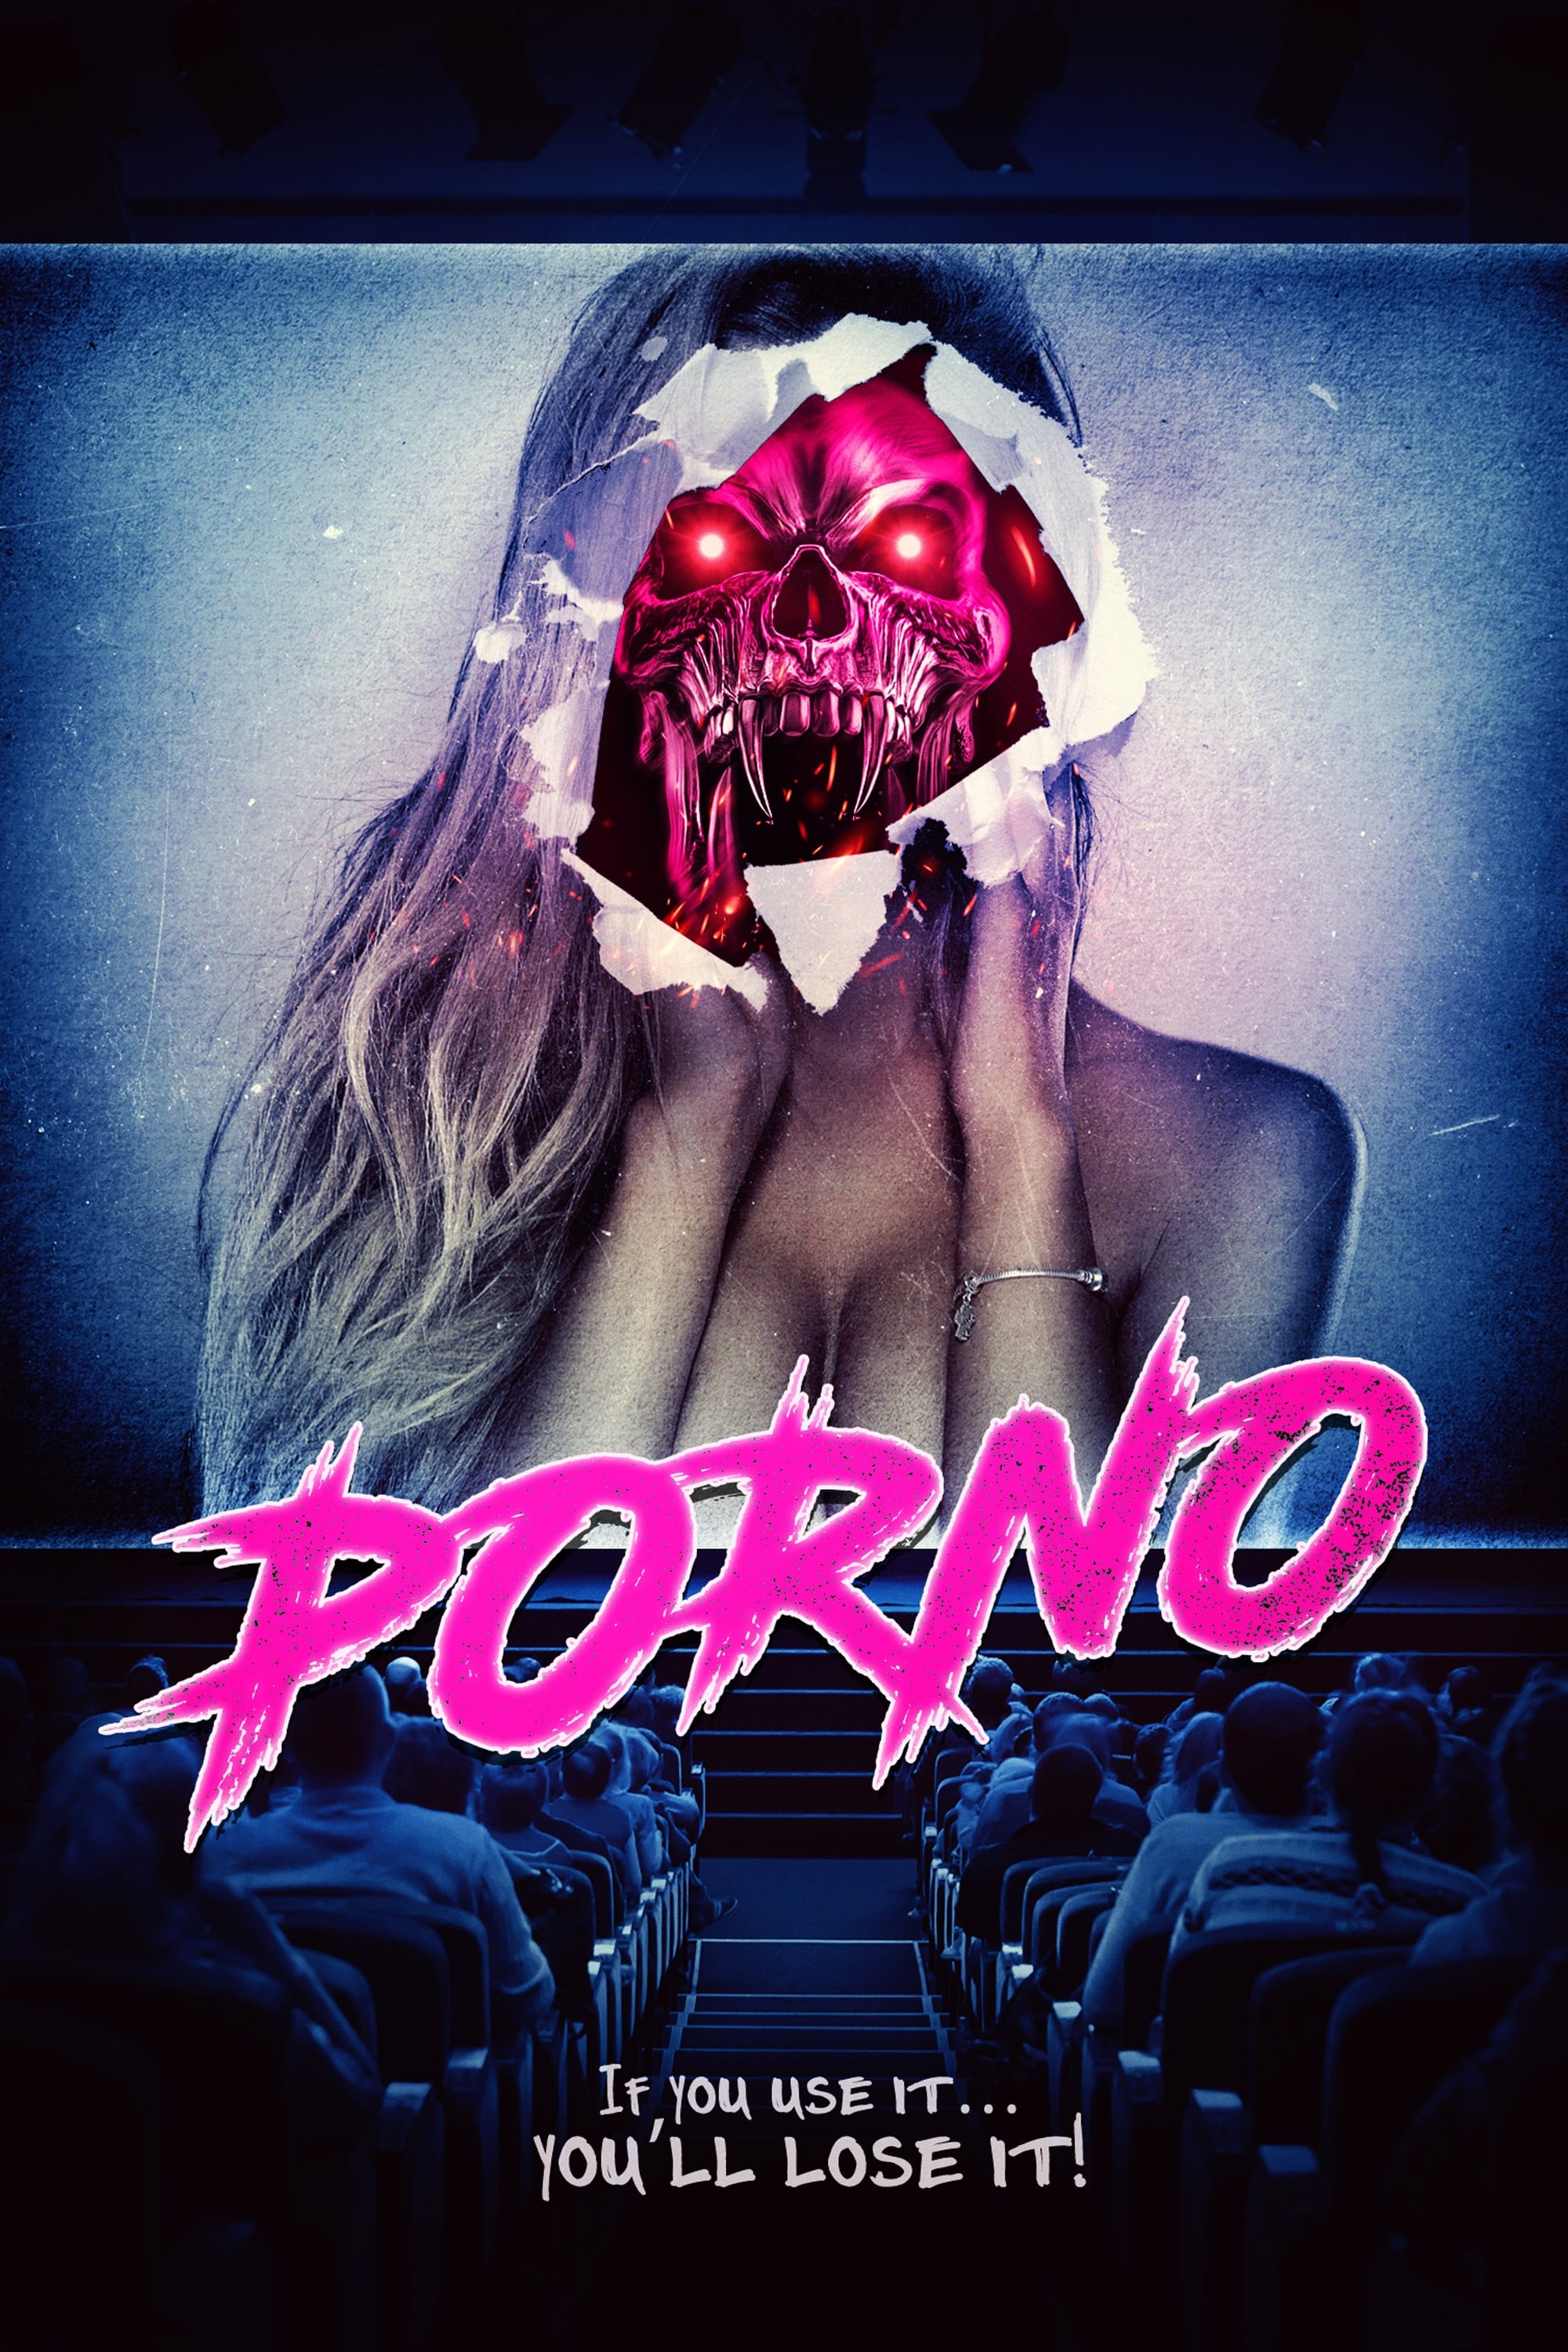 Giáo Dục Giới Tính – Porno (2019) Full HD Vietsub